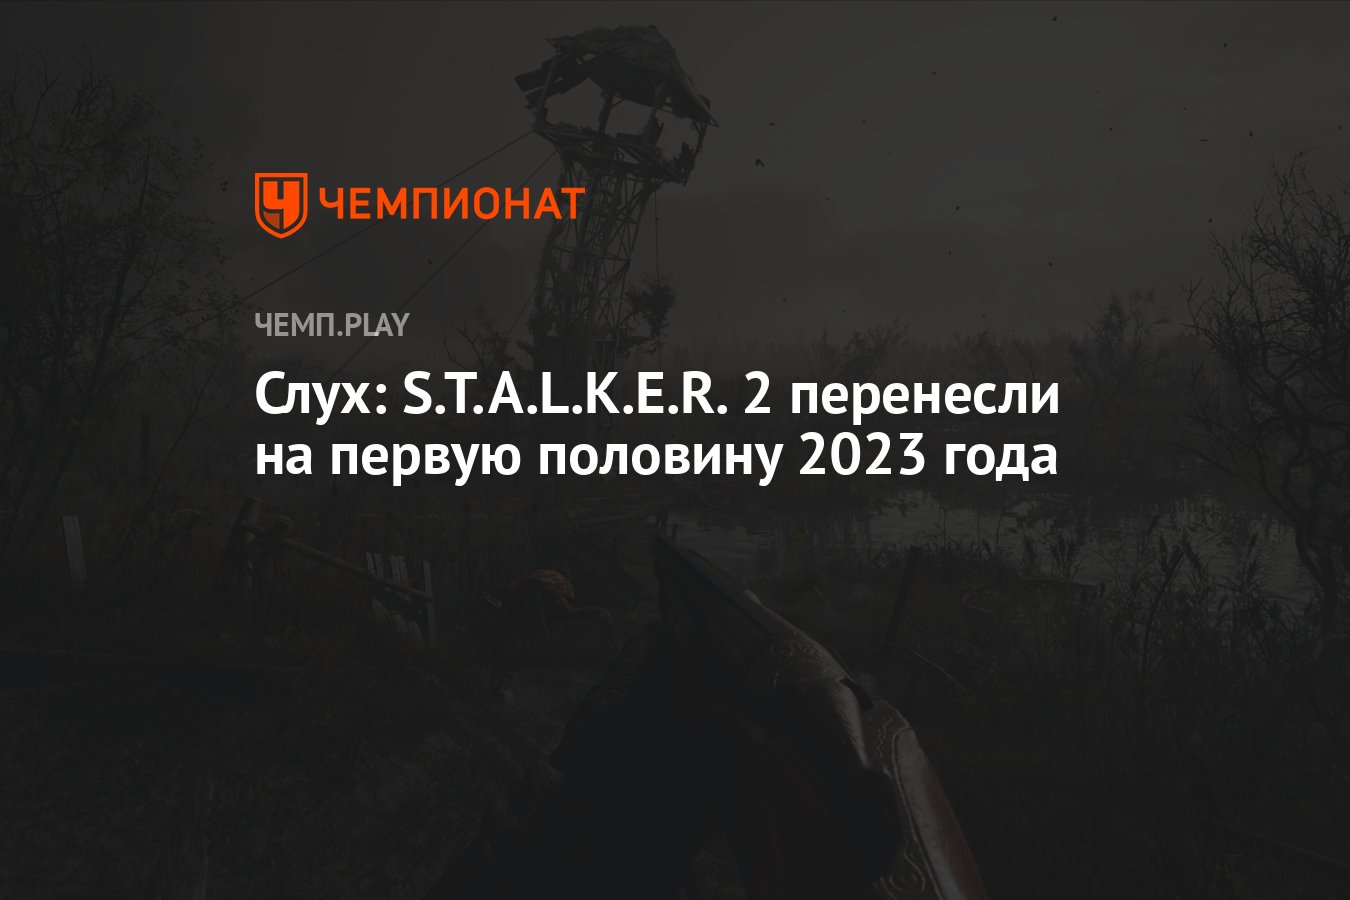 Первую половину 2023 года. S.T.A.L.K.E.R 2 перенесли на 2023 год.